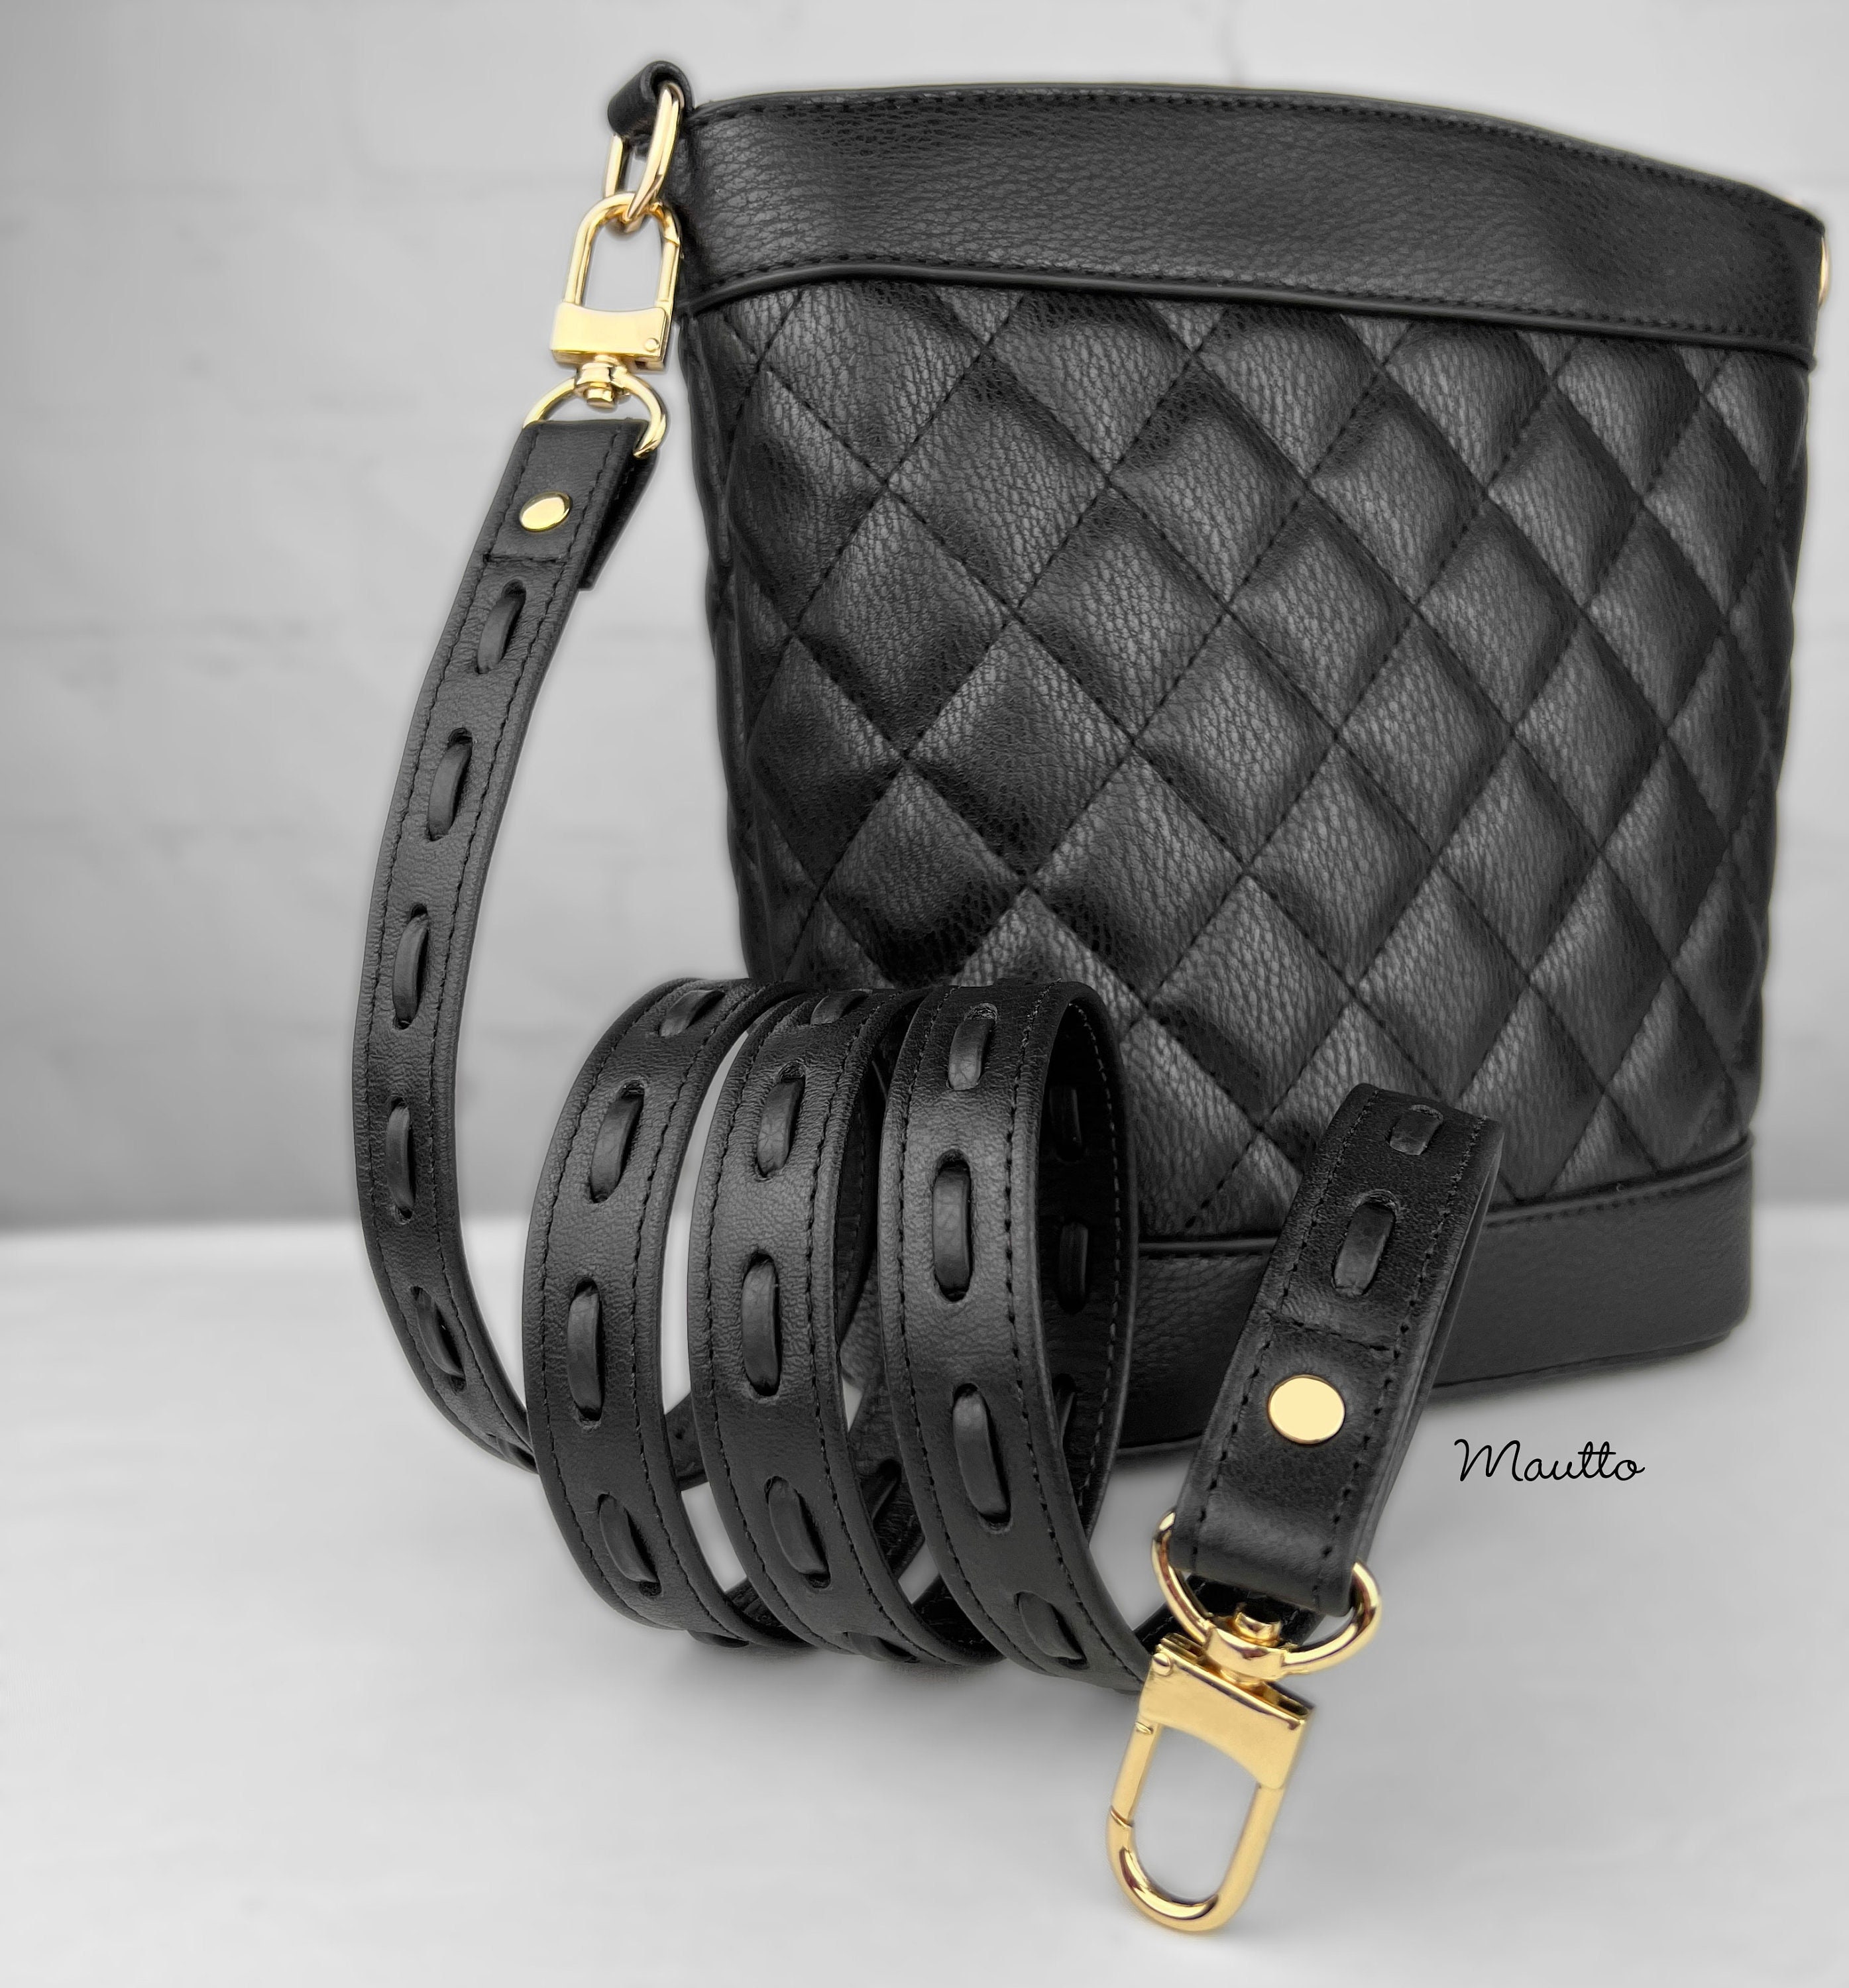 Mautto Black Leather Strap for LV Pochette, Alma, Eva Etc